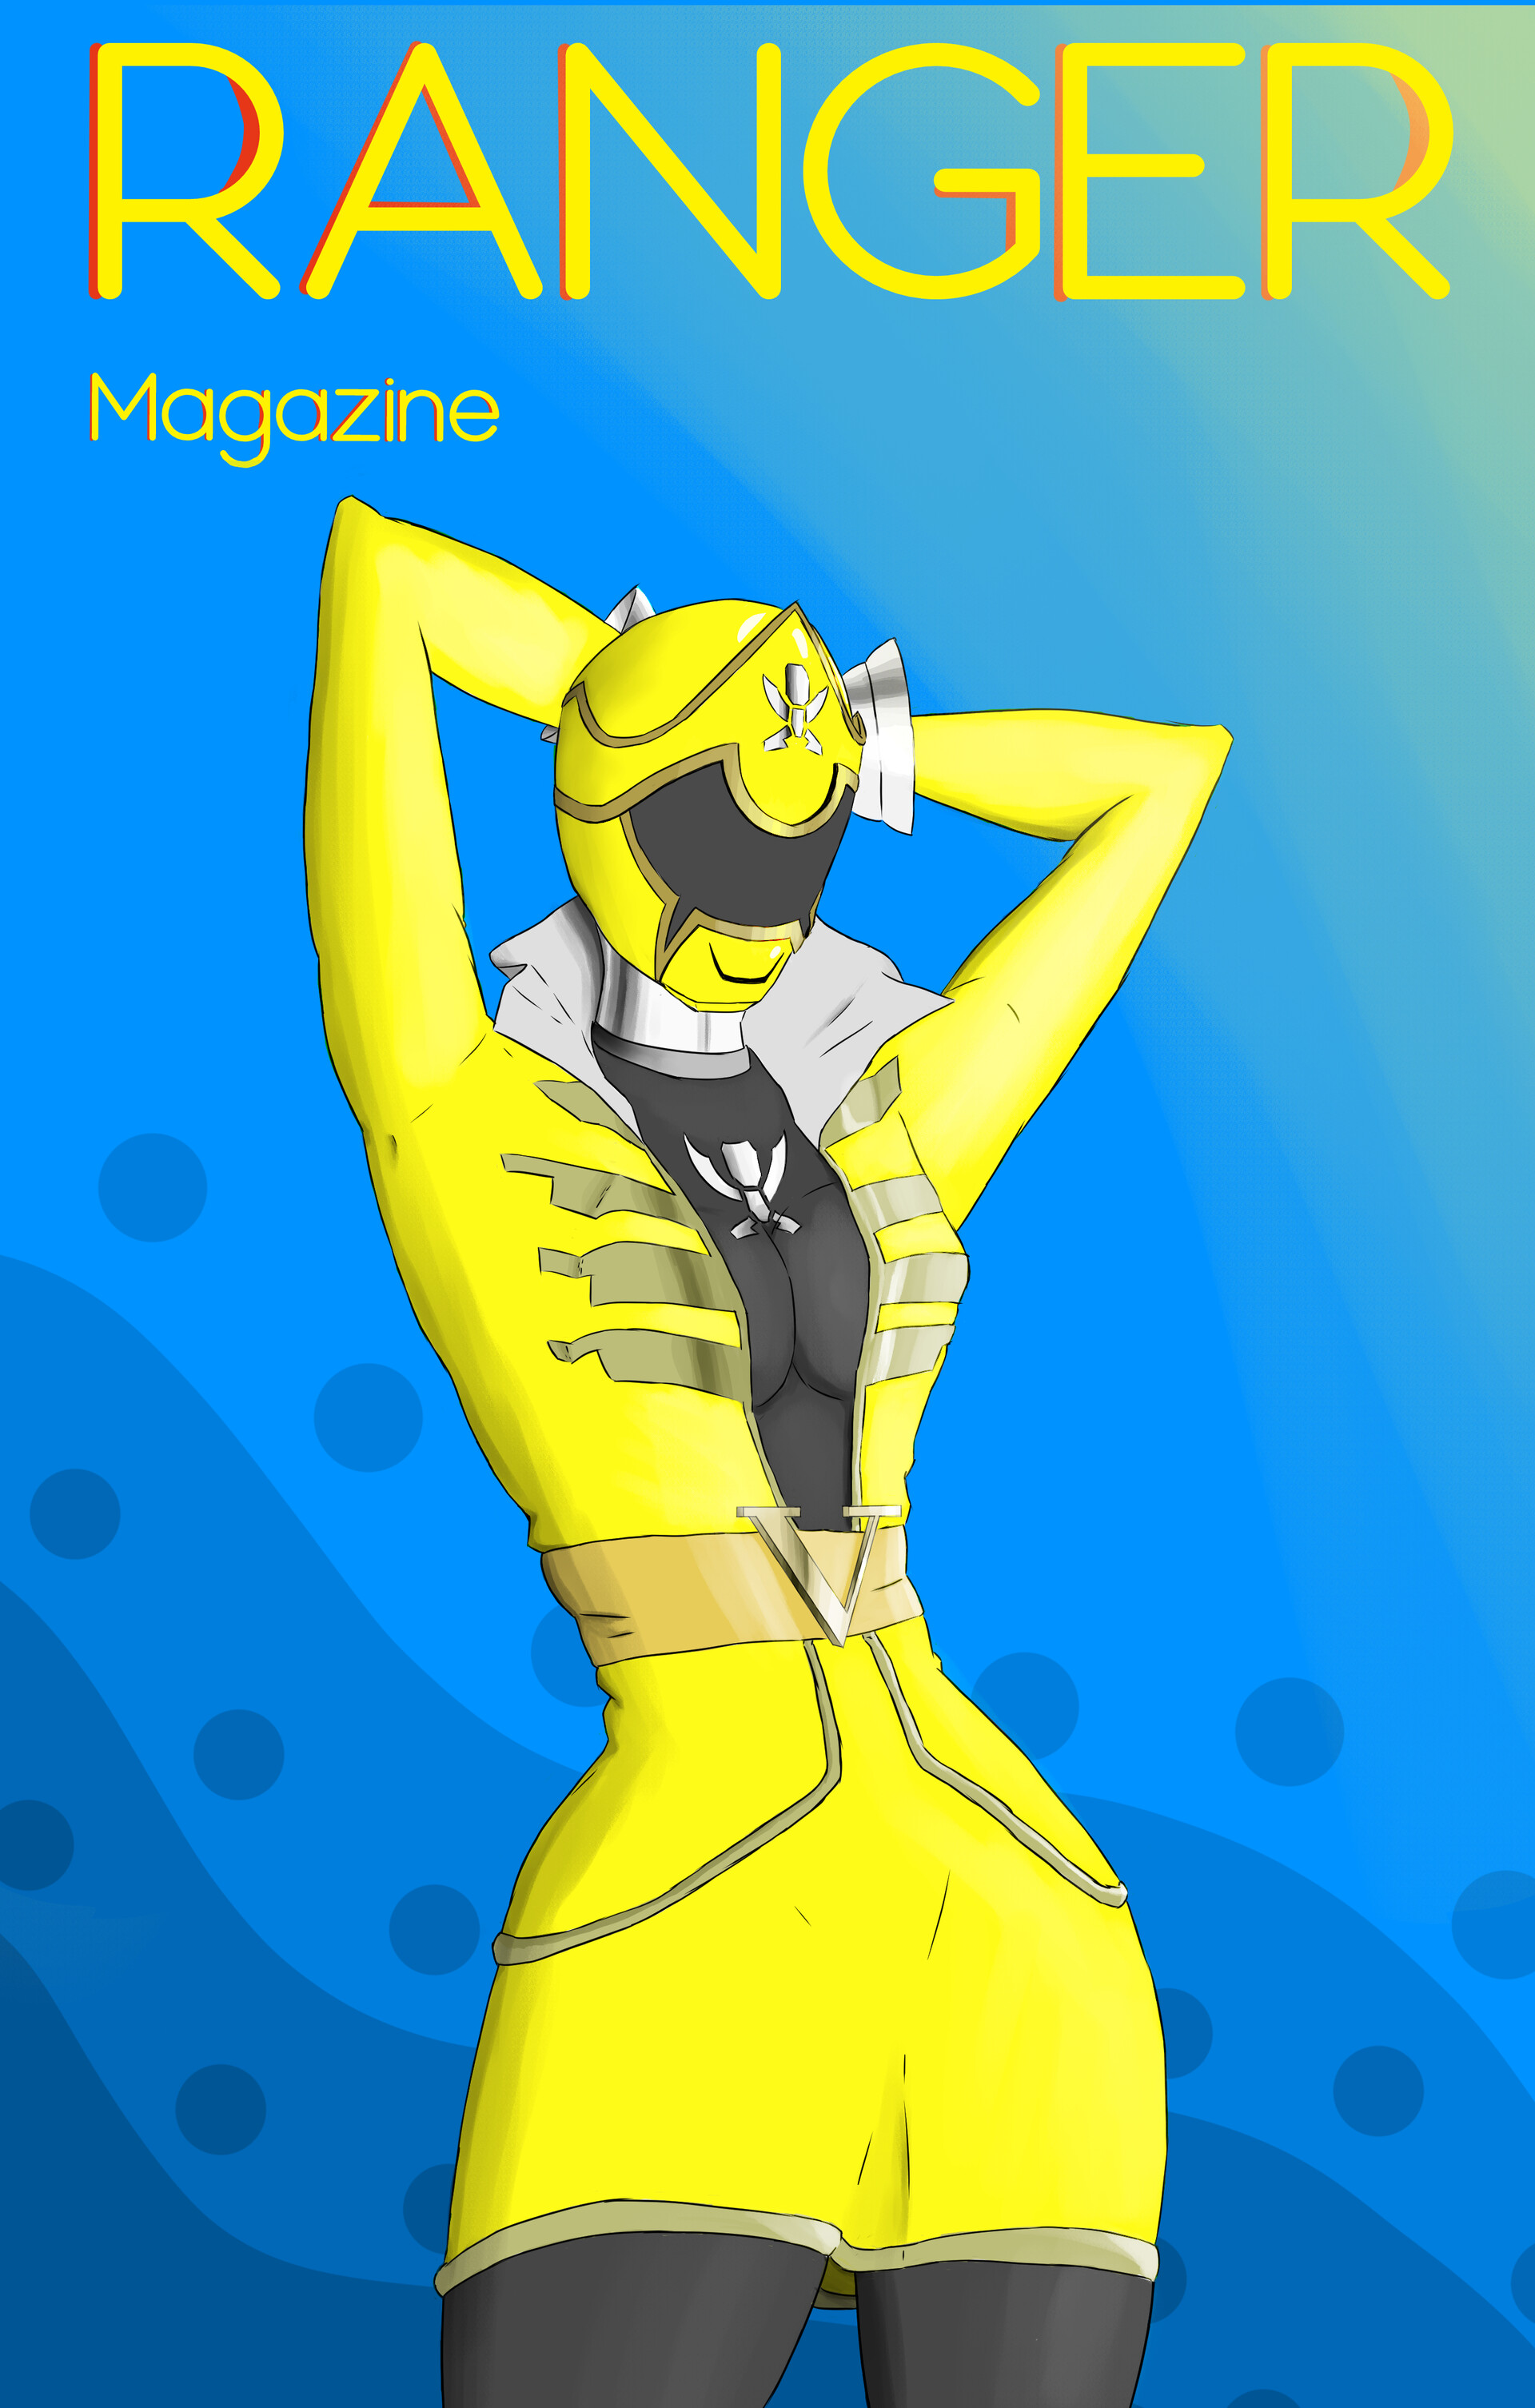 ArtStation - Ranger Magazine: Yellow Super Mega Force Ranger